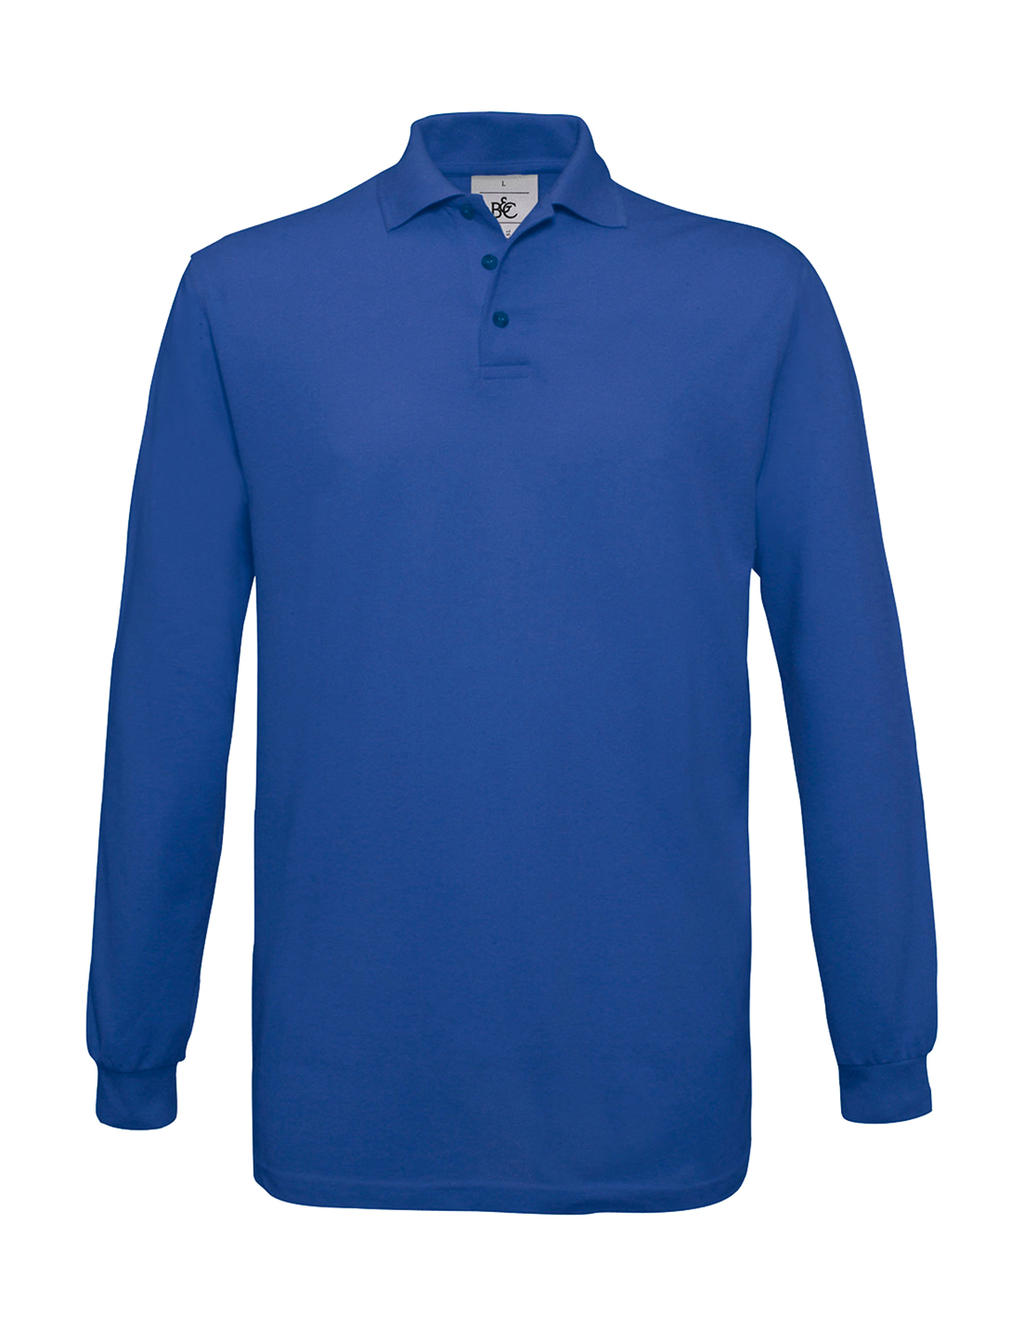 Pánské polo tričko B&C Safran s dlouhým rukávem - modré, M